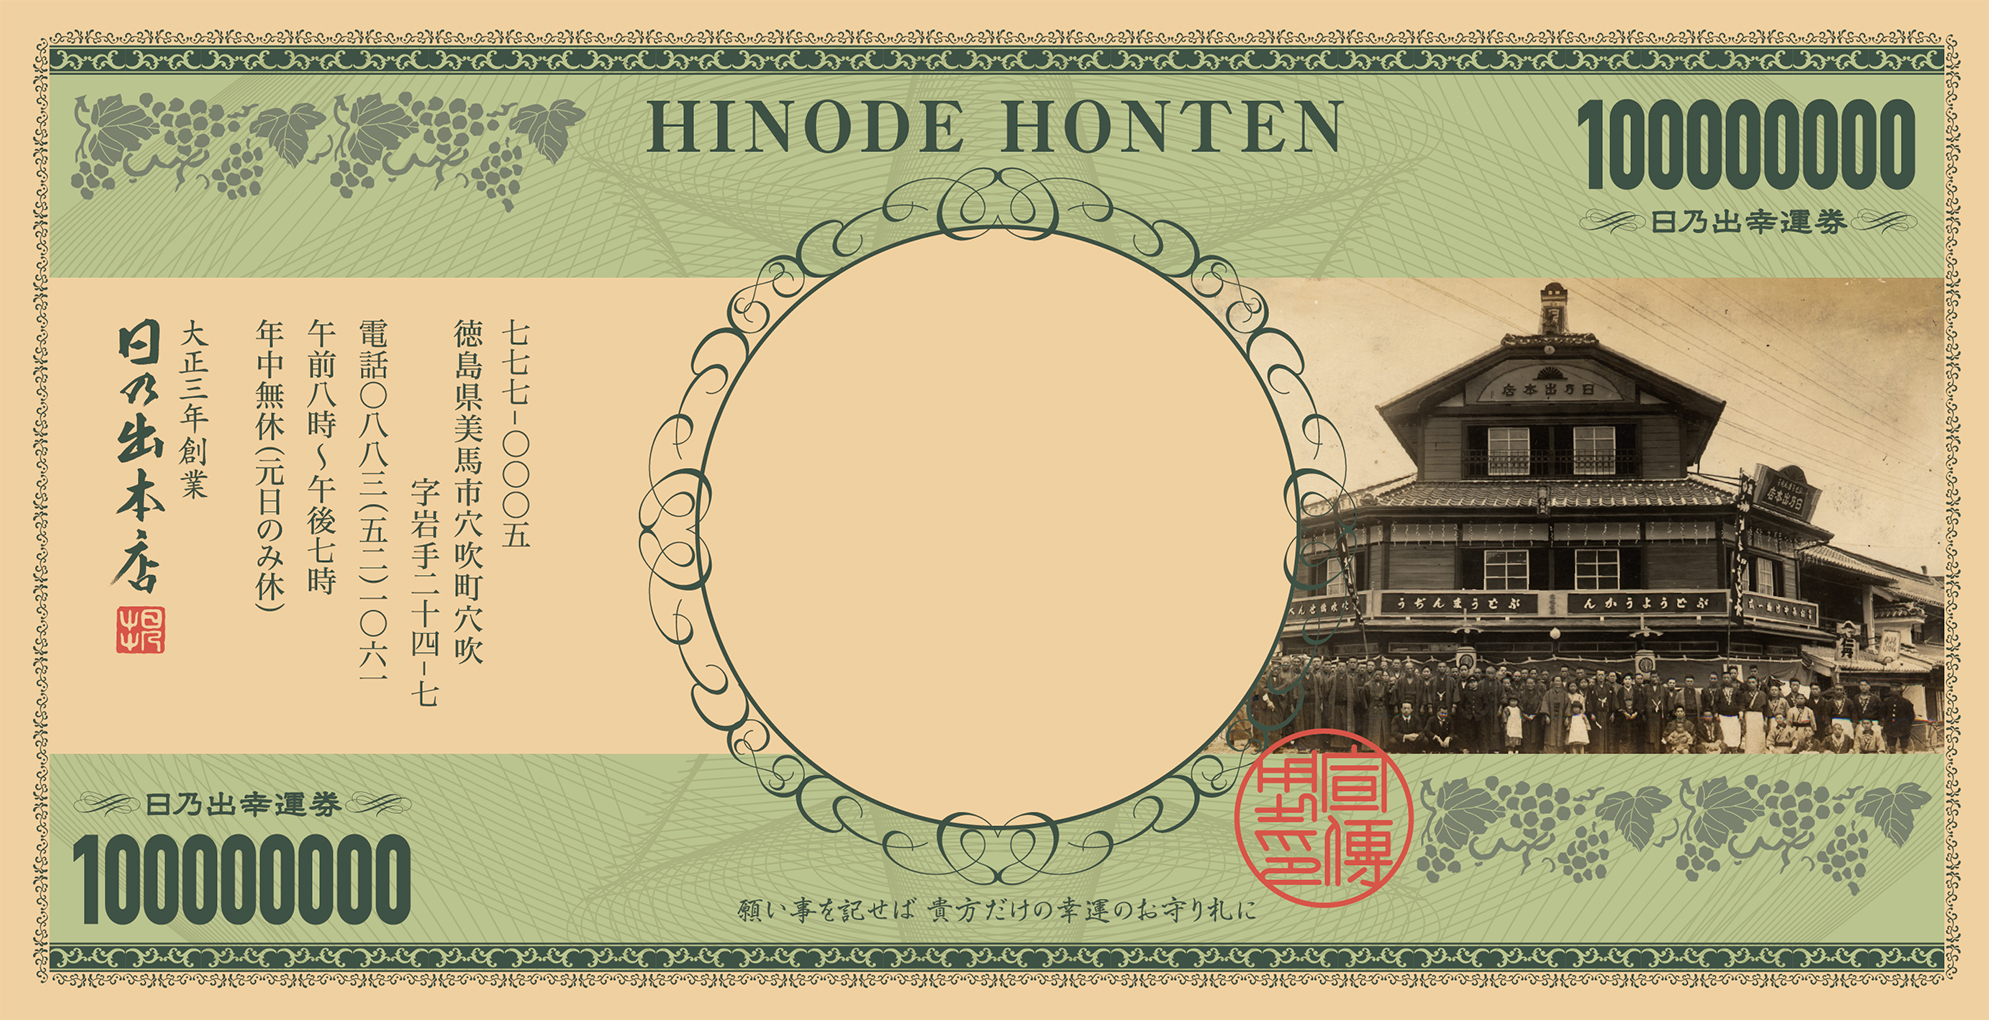 hinode2015_02